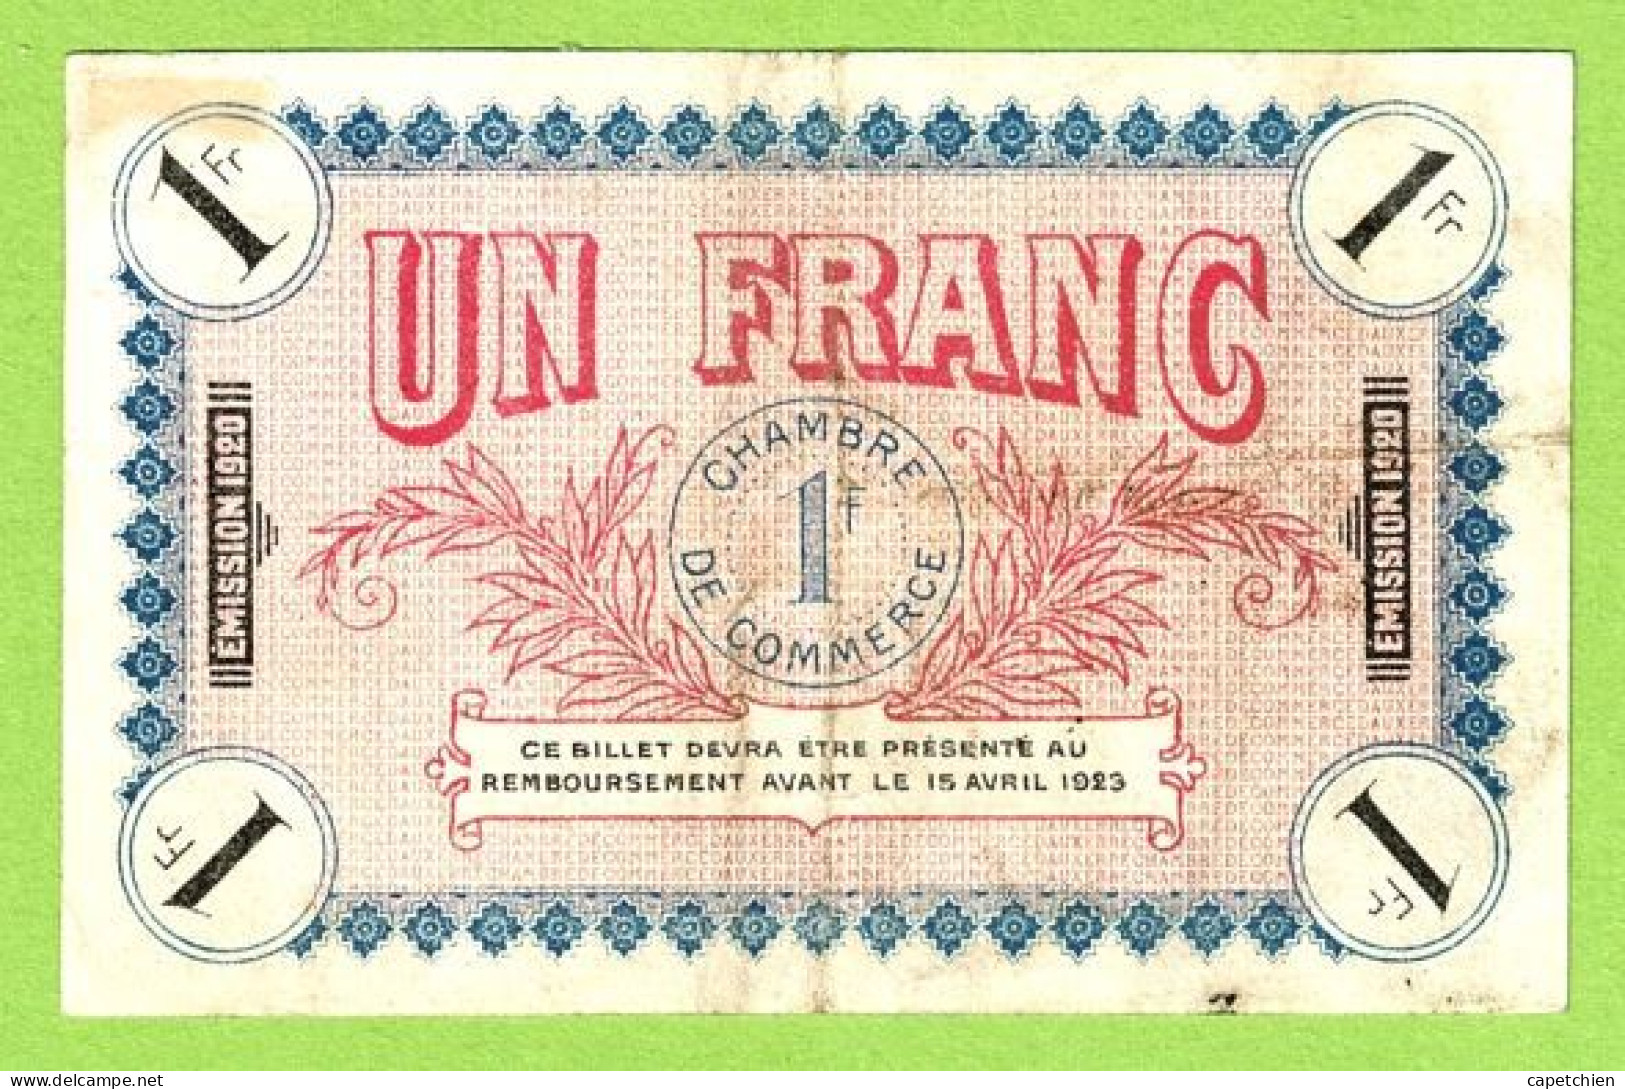 FRANCE / AUXERRE / 1 FRANC / 15 AVRIL 1920 / N° 030771 / SERIE   124 - Chambre De Commerce